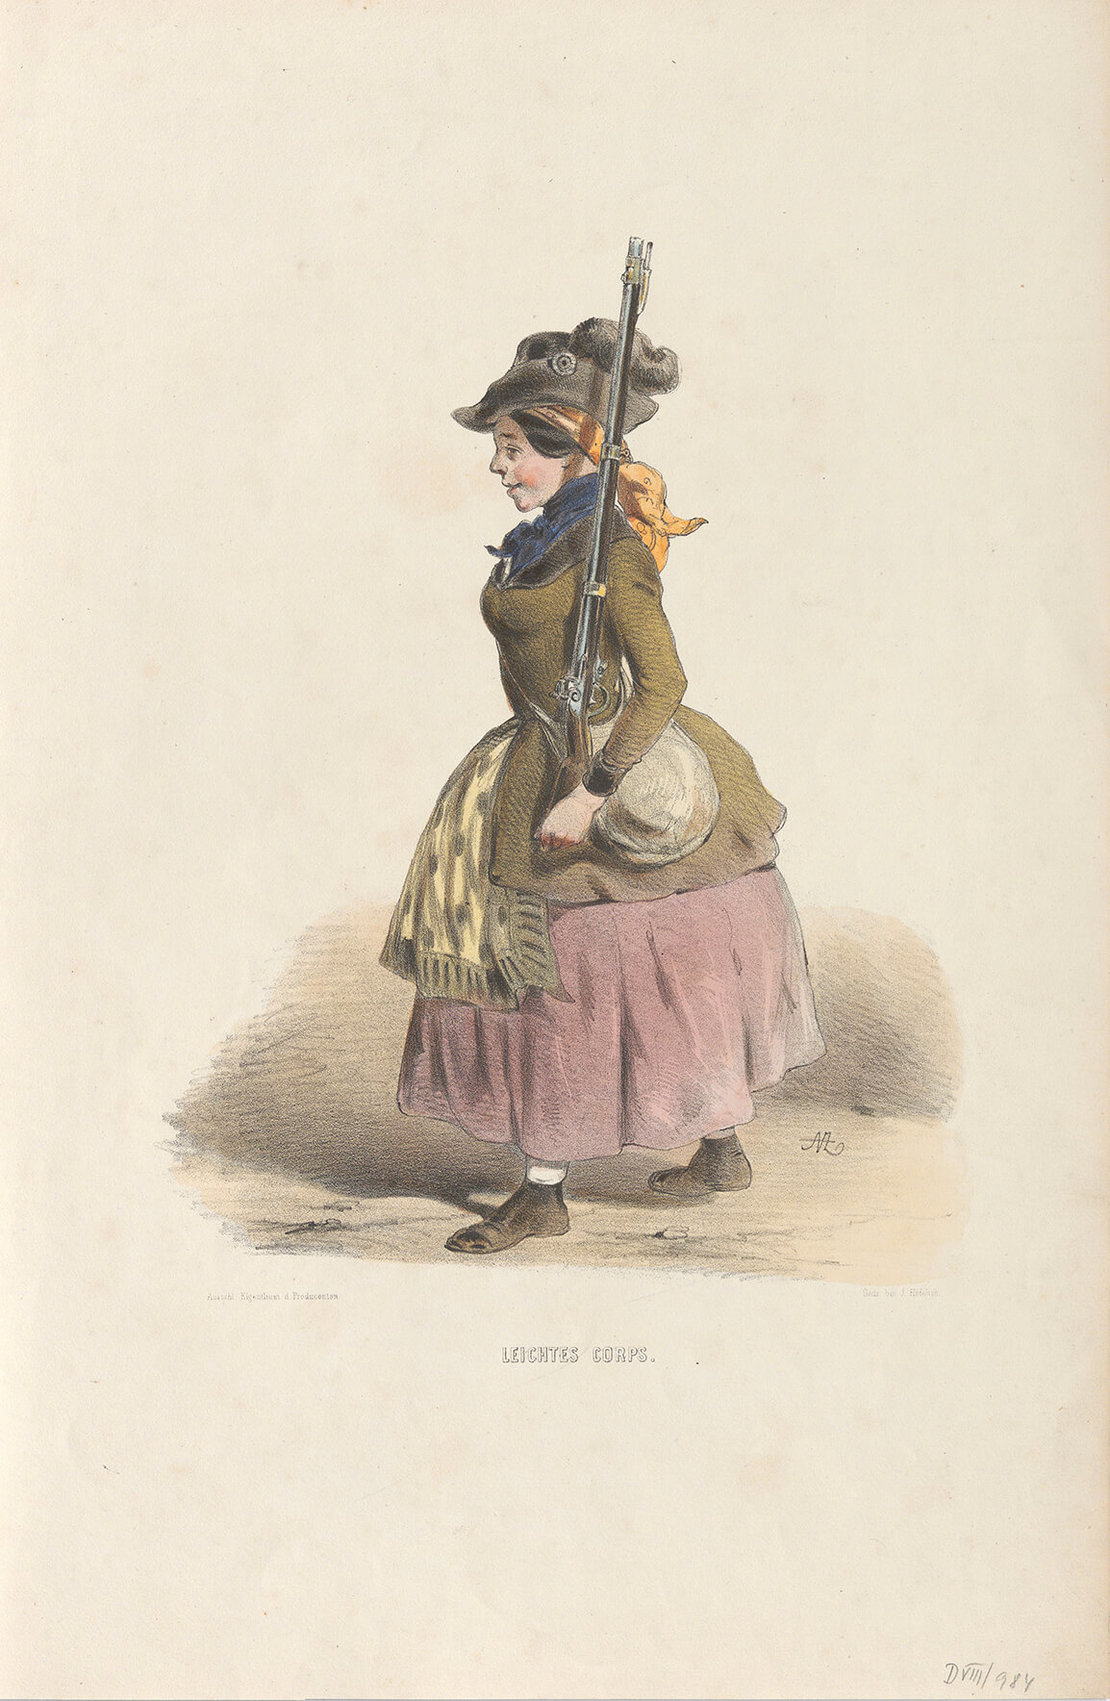 Der Karikaturist Anton Zampis nahm in seinen Lithografien die Figuren der Revolution 1848 aufs Korn, so auch die Frauen. Der Titel des Werkes lautet: "LEICHTES CORPS." (Aus der Serie "ERINNERUNGS=BILDER / aus / WIENS OCTOBER-TAGEN 1848), Wien Museum 